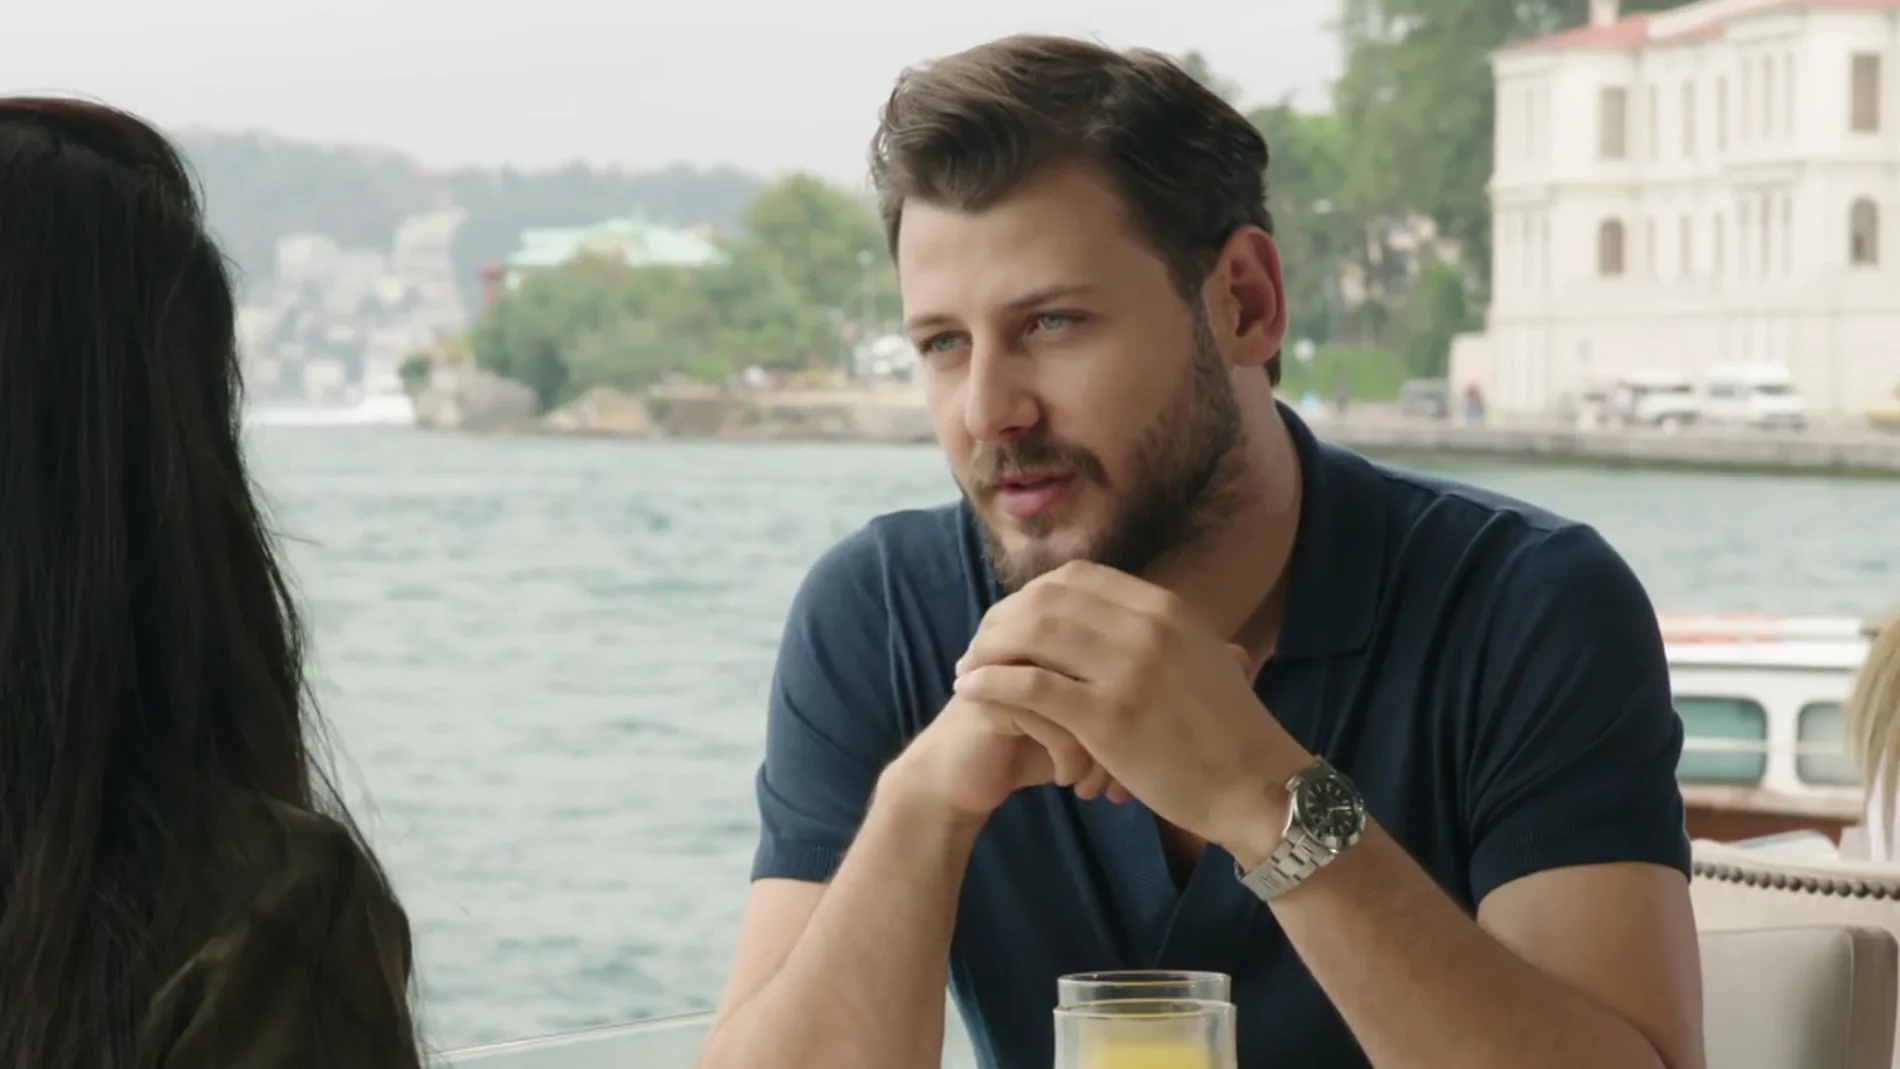 Zeynep y Onur tienen un romántico desayuno a la orilla del mar: "Tenerte es como un milagro"